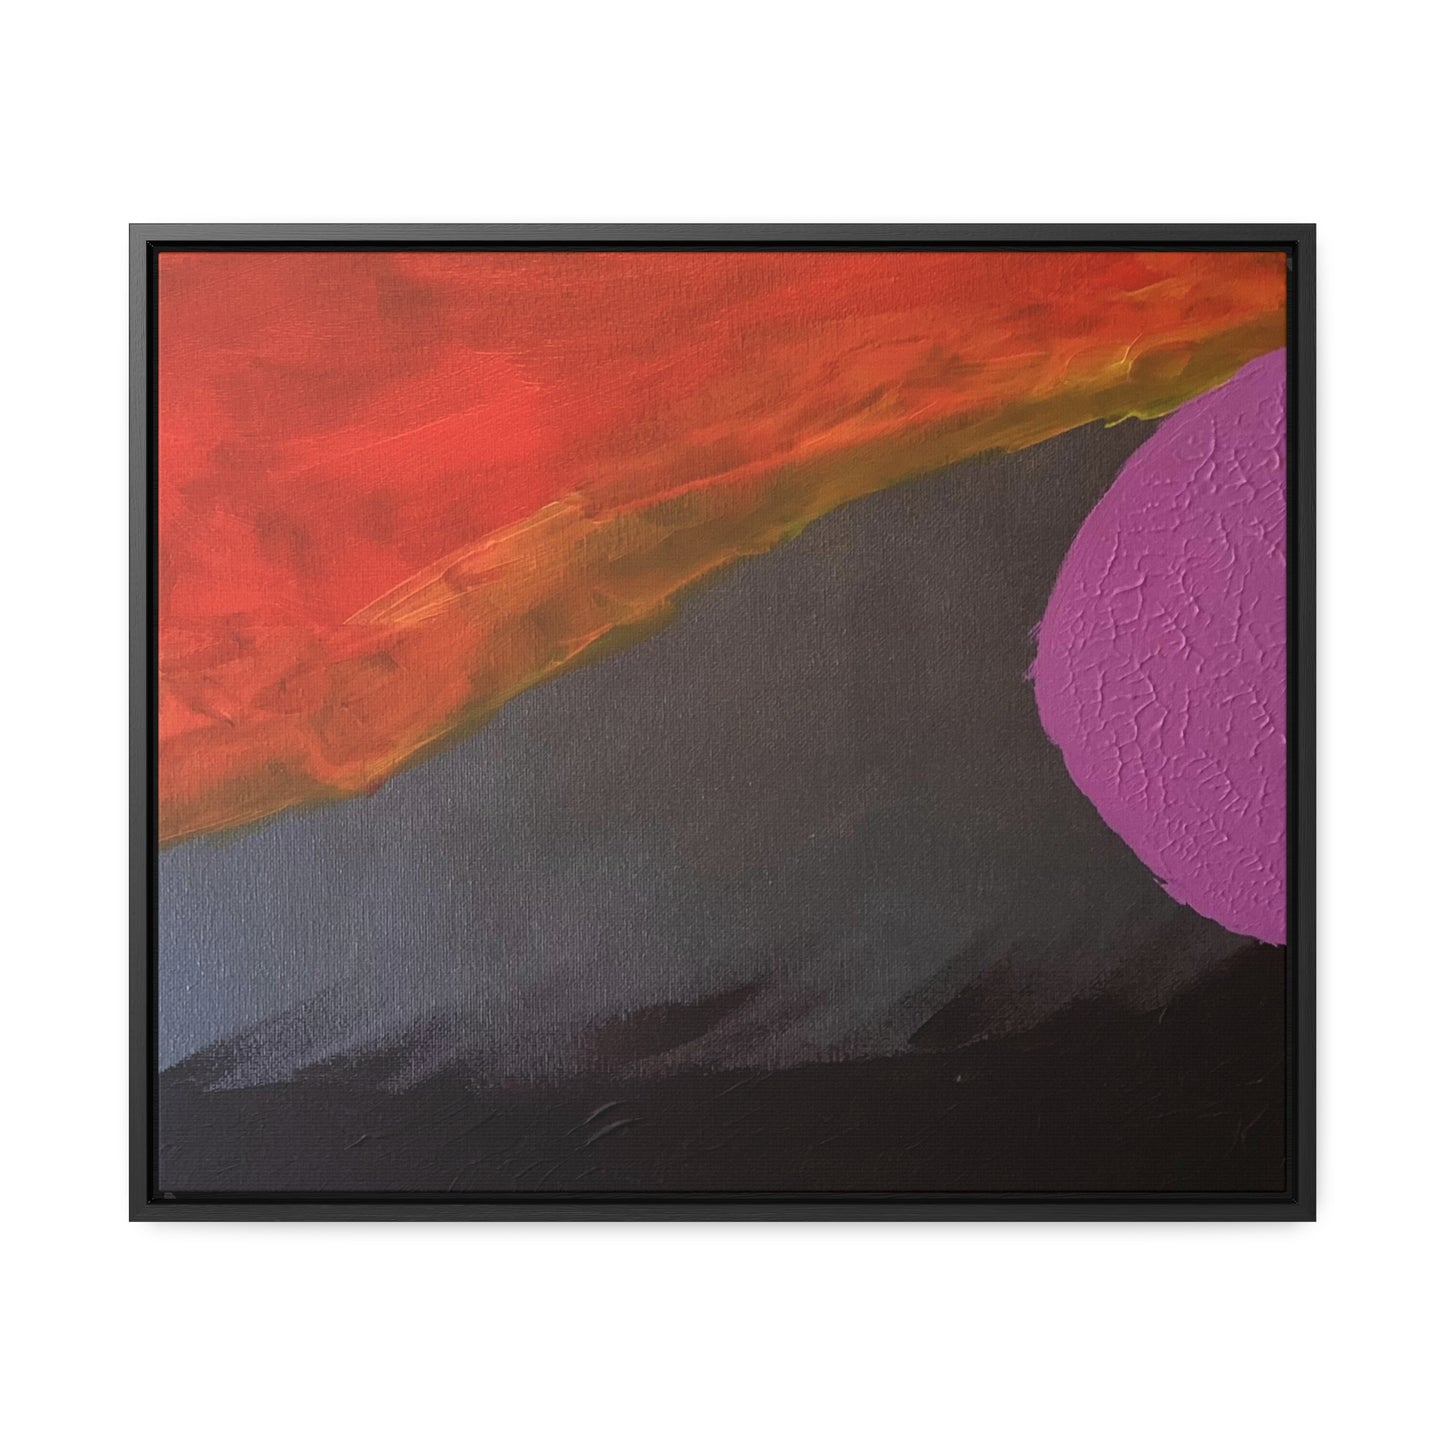 Sunset series #3 purple moon